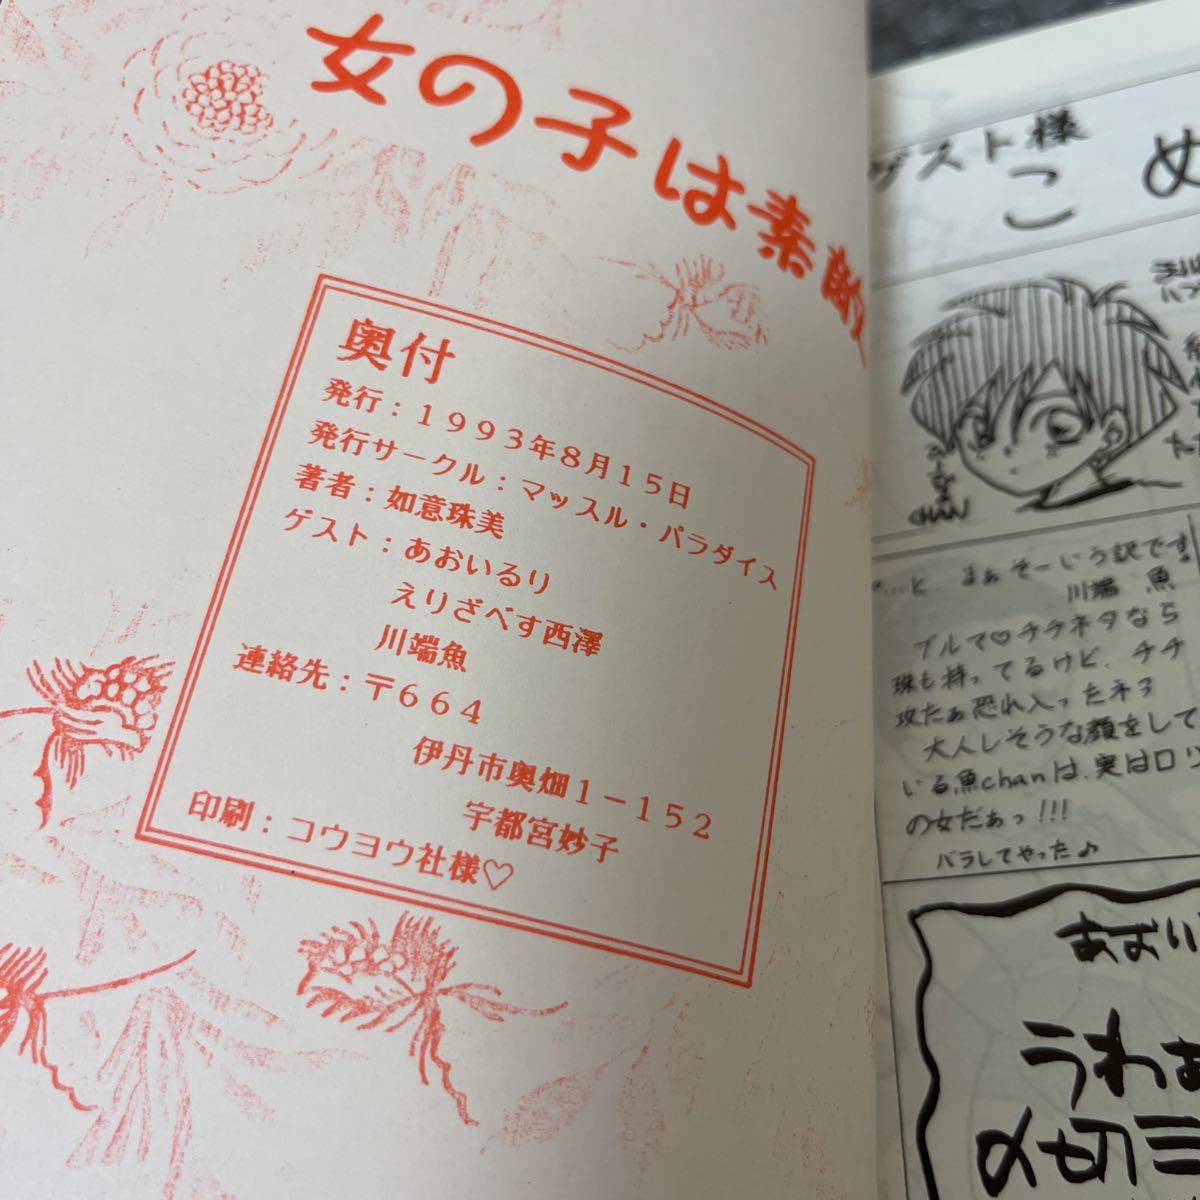 Z743 Dragon Ball журнал узкого круга литераторов 1993 девочка. замечательный 